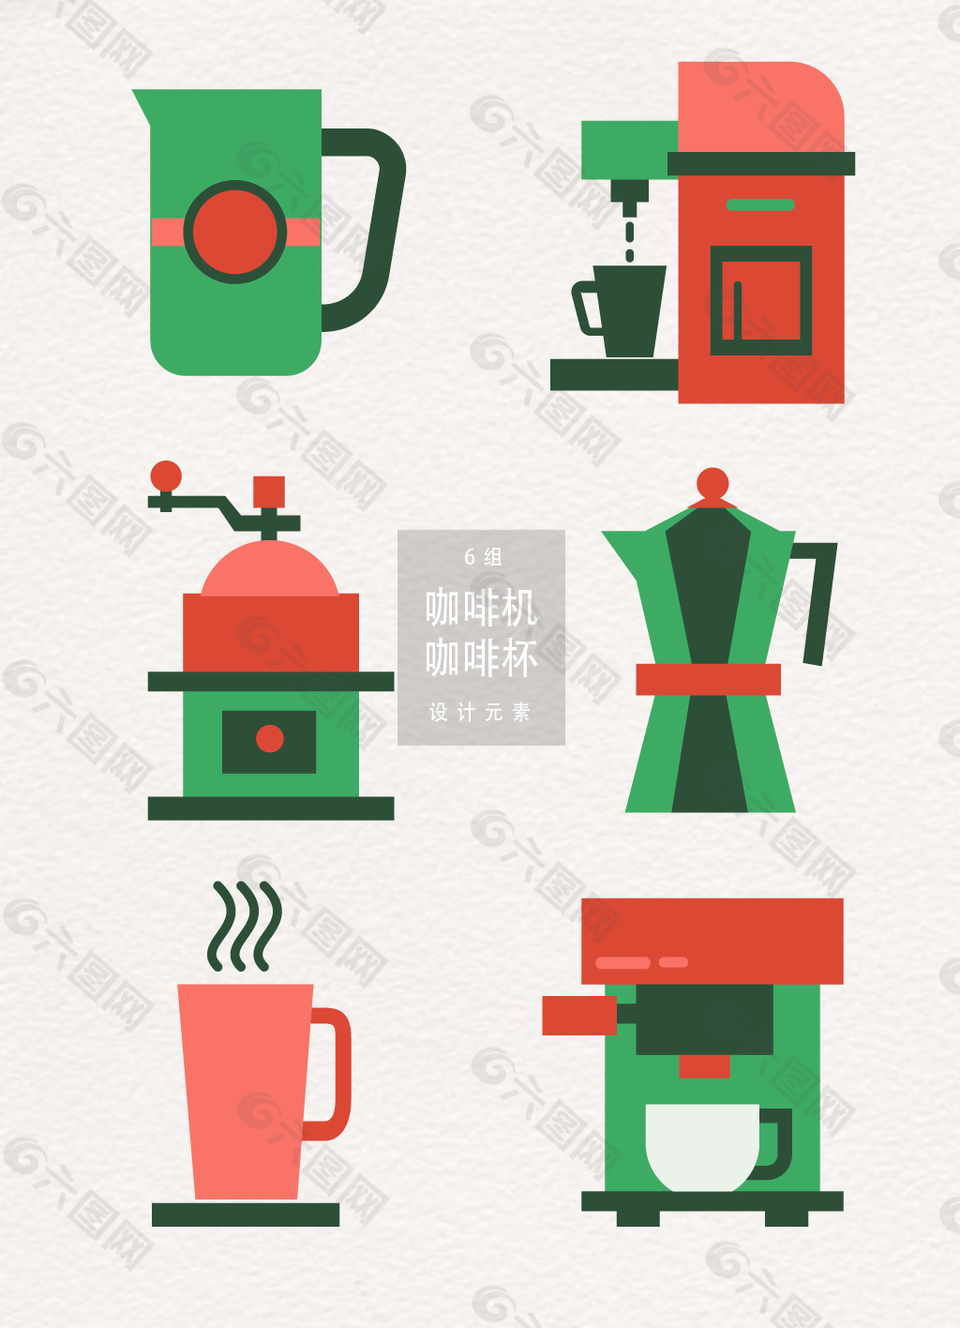 咖啡机和咖啡杯设计元素